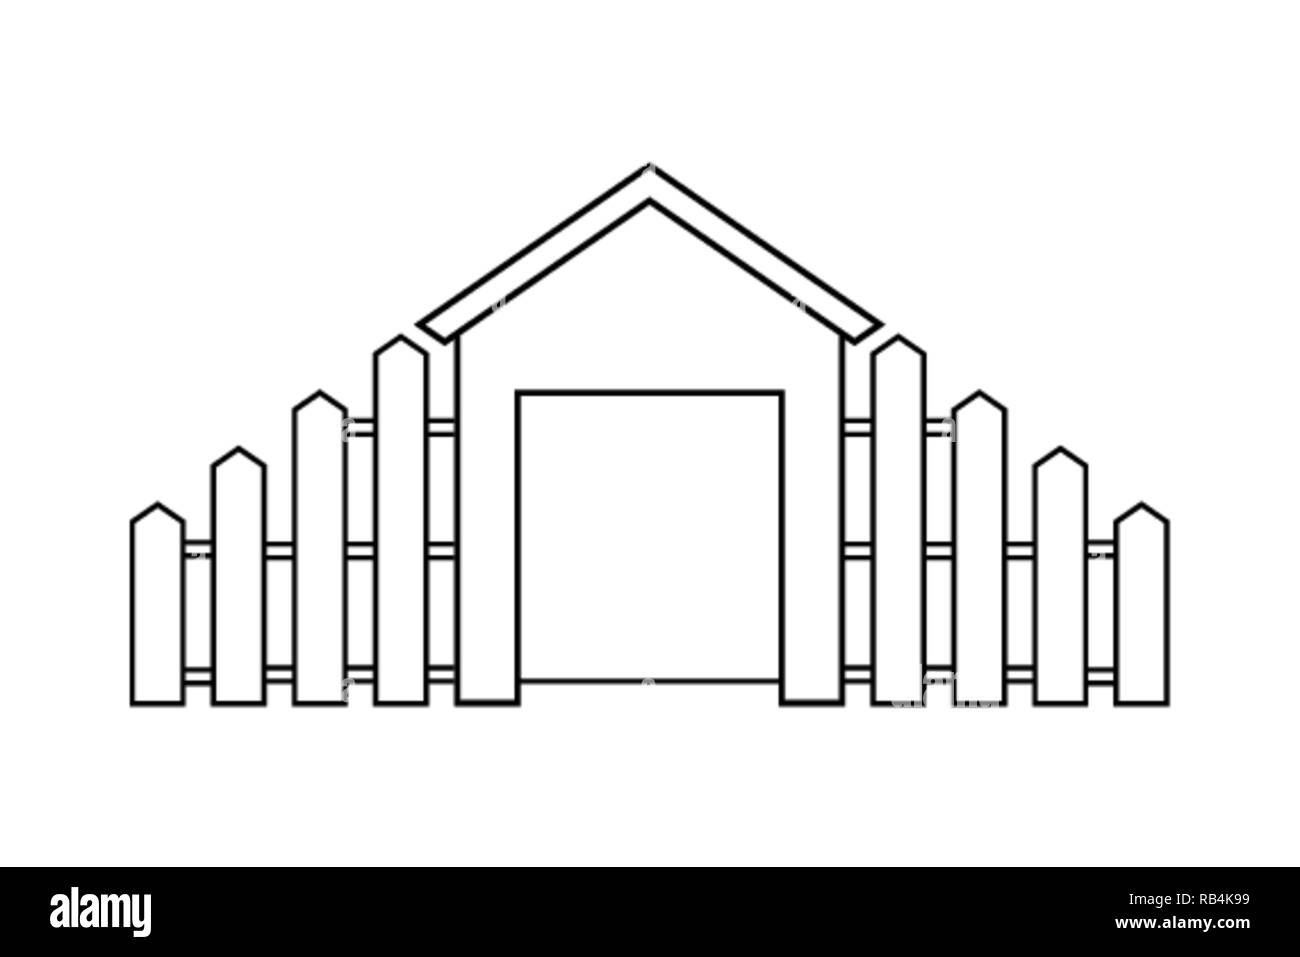 Profilo astratto disegno, casa moderna con staccionata in legno illustrazione vettoriale Illustrazione Vettoriale